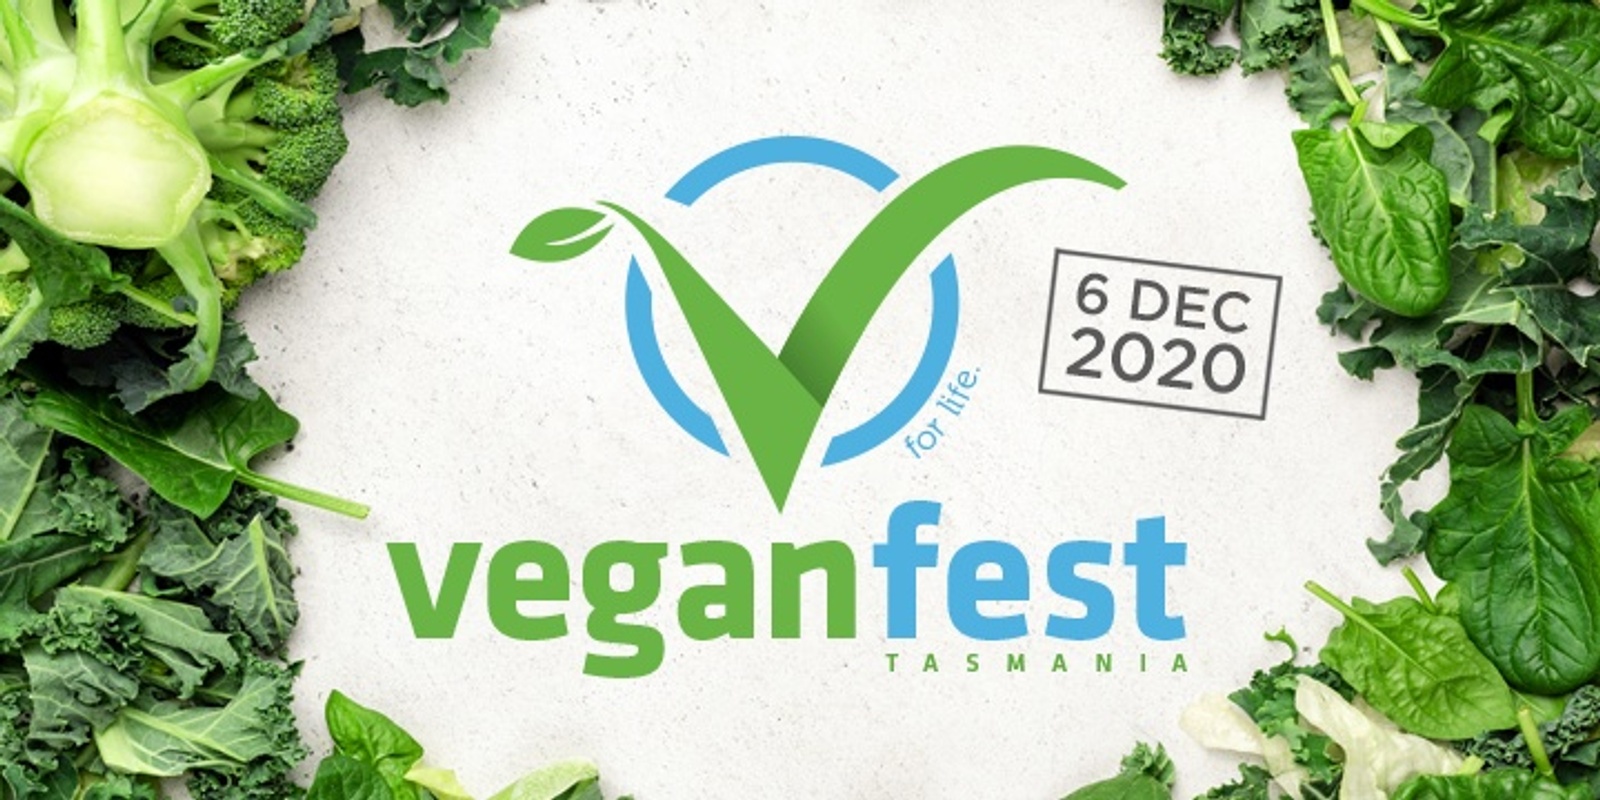 Banner image for VeganFest Tasmania 2020